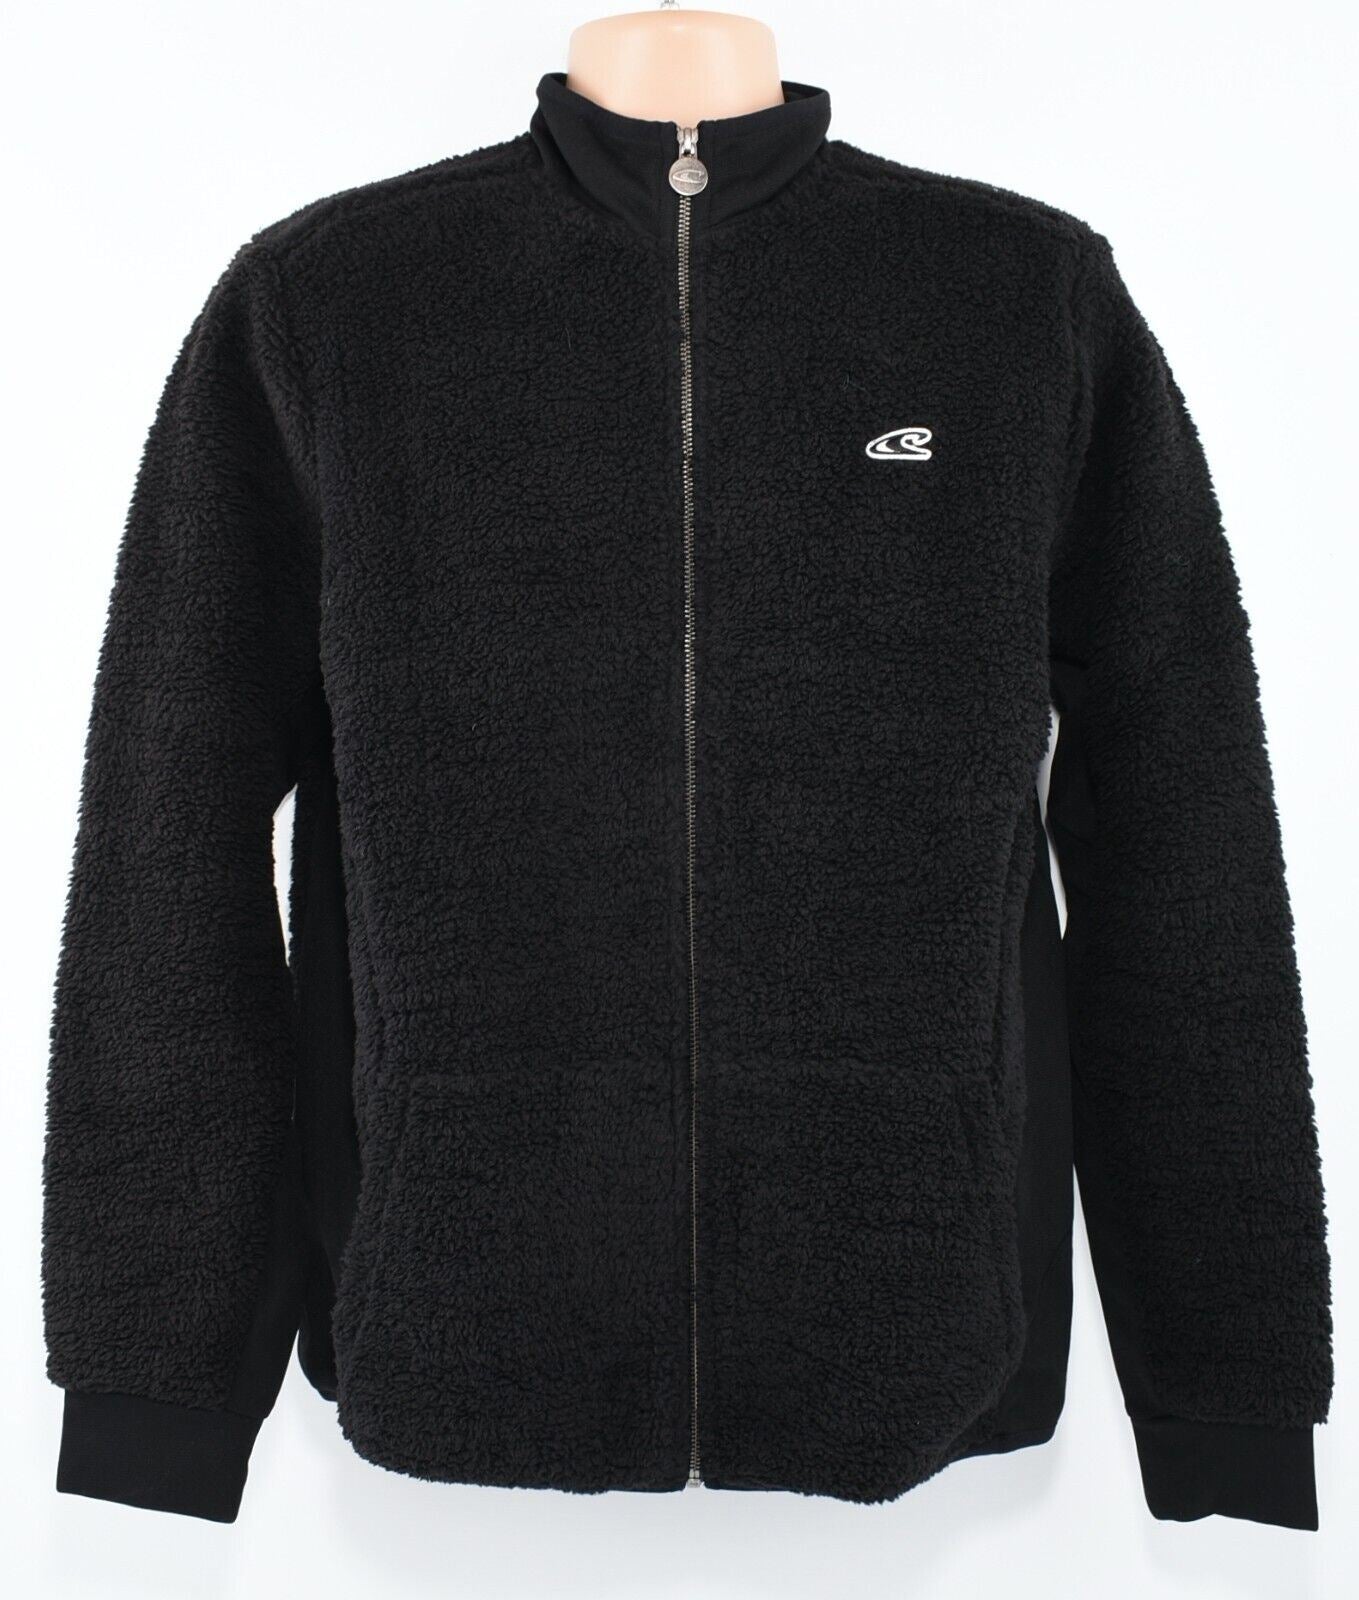 O'NEILL Men's Full Zip Sherpa Teddy Fleece Jacket, Black, size M